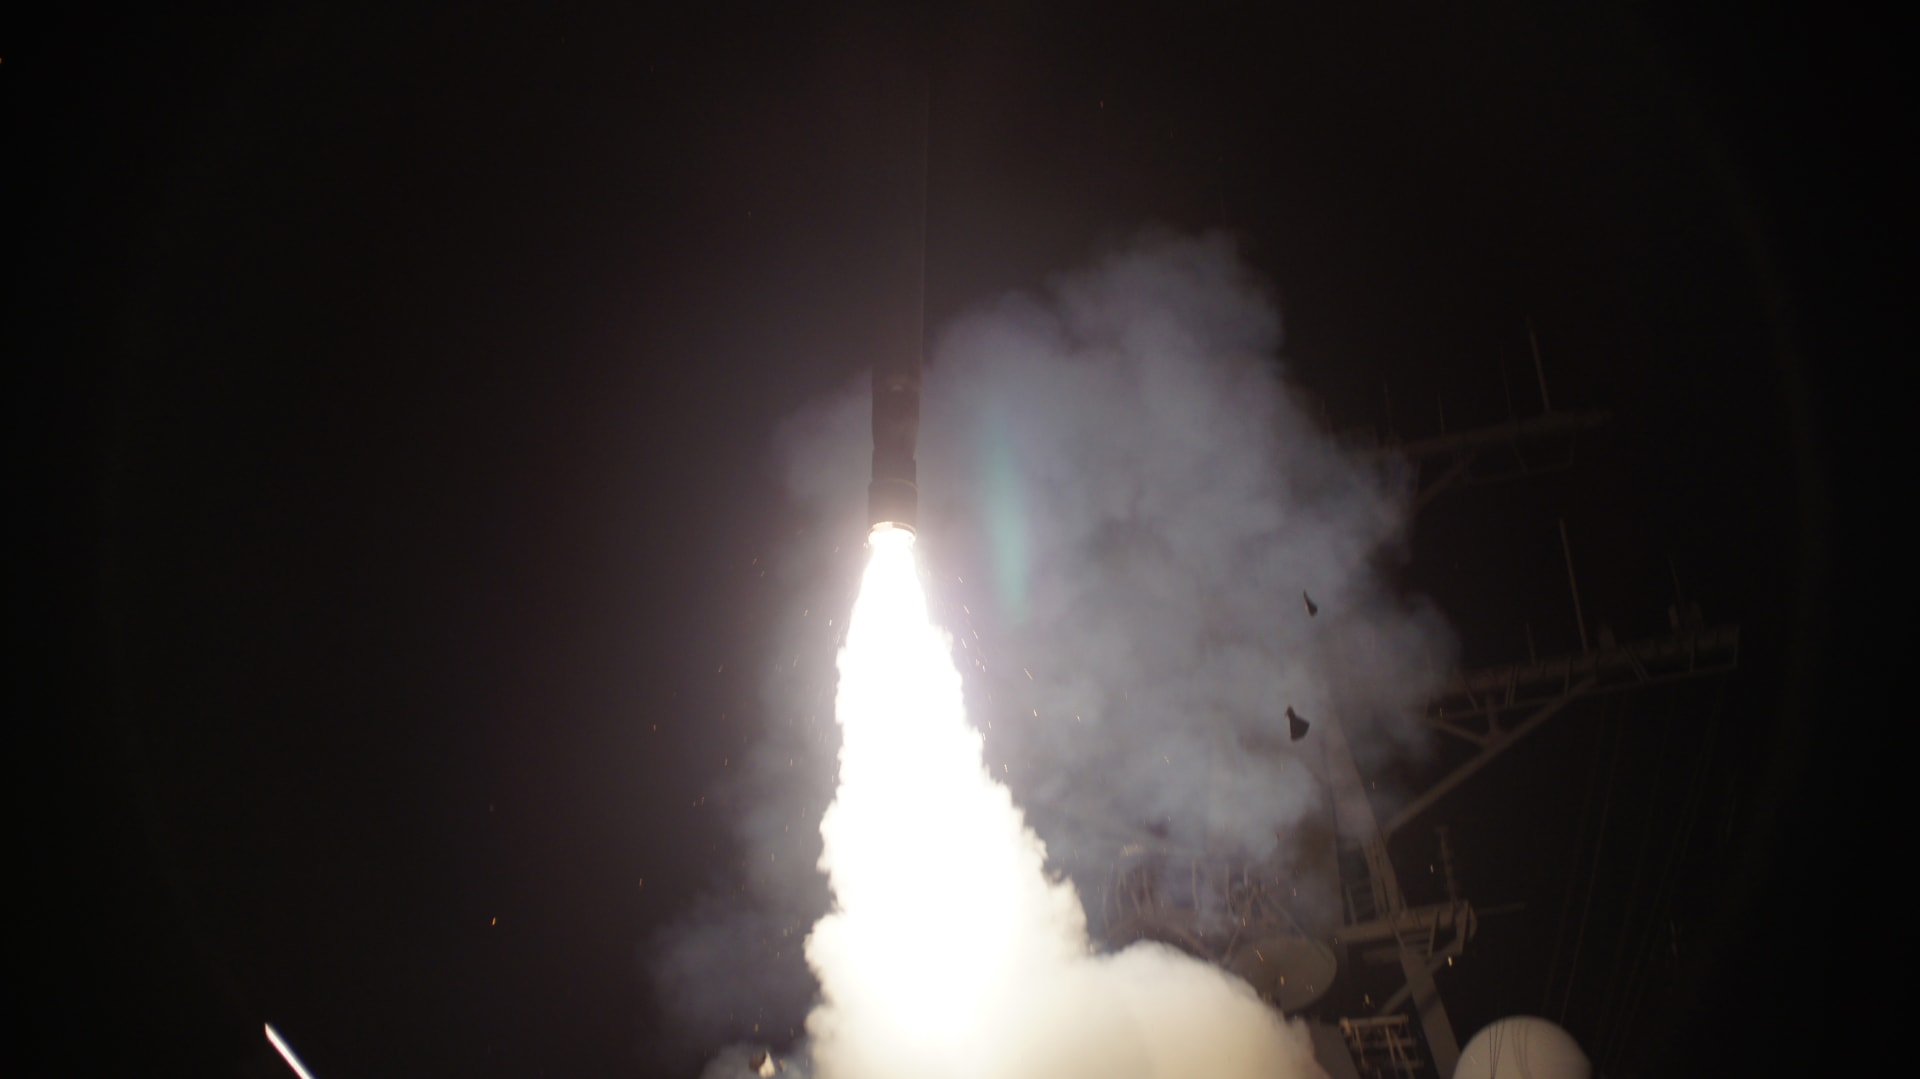 إسرائيل تكشف شبكة تهريب لبيع صواريخ "غير مشروعة" إلى "دولة آسيوية"